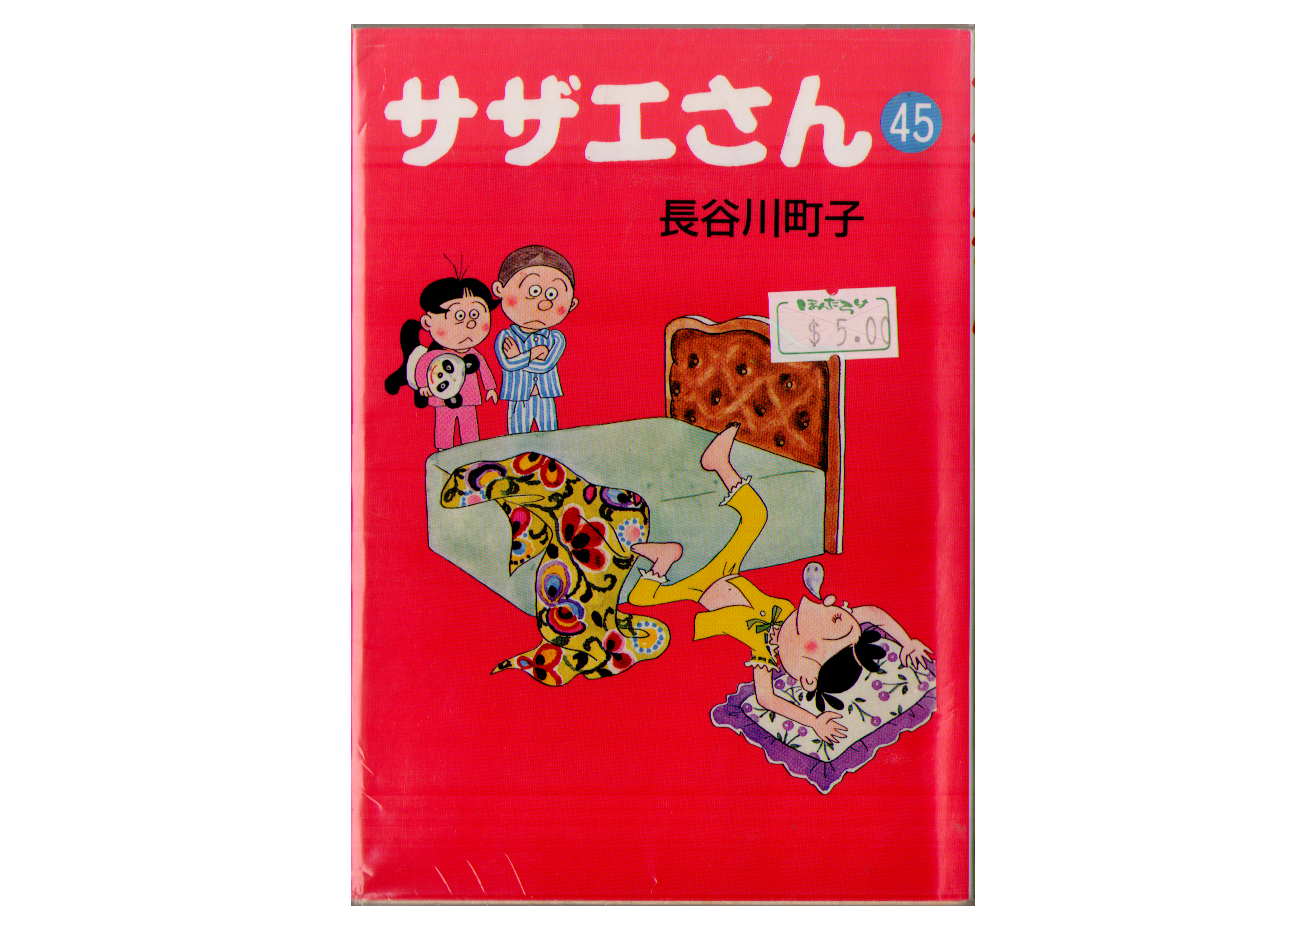 Machiko Hasegawa [ Sazae san vol.45 ] Bunko Sized Comic, Japanes